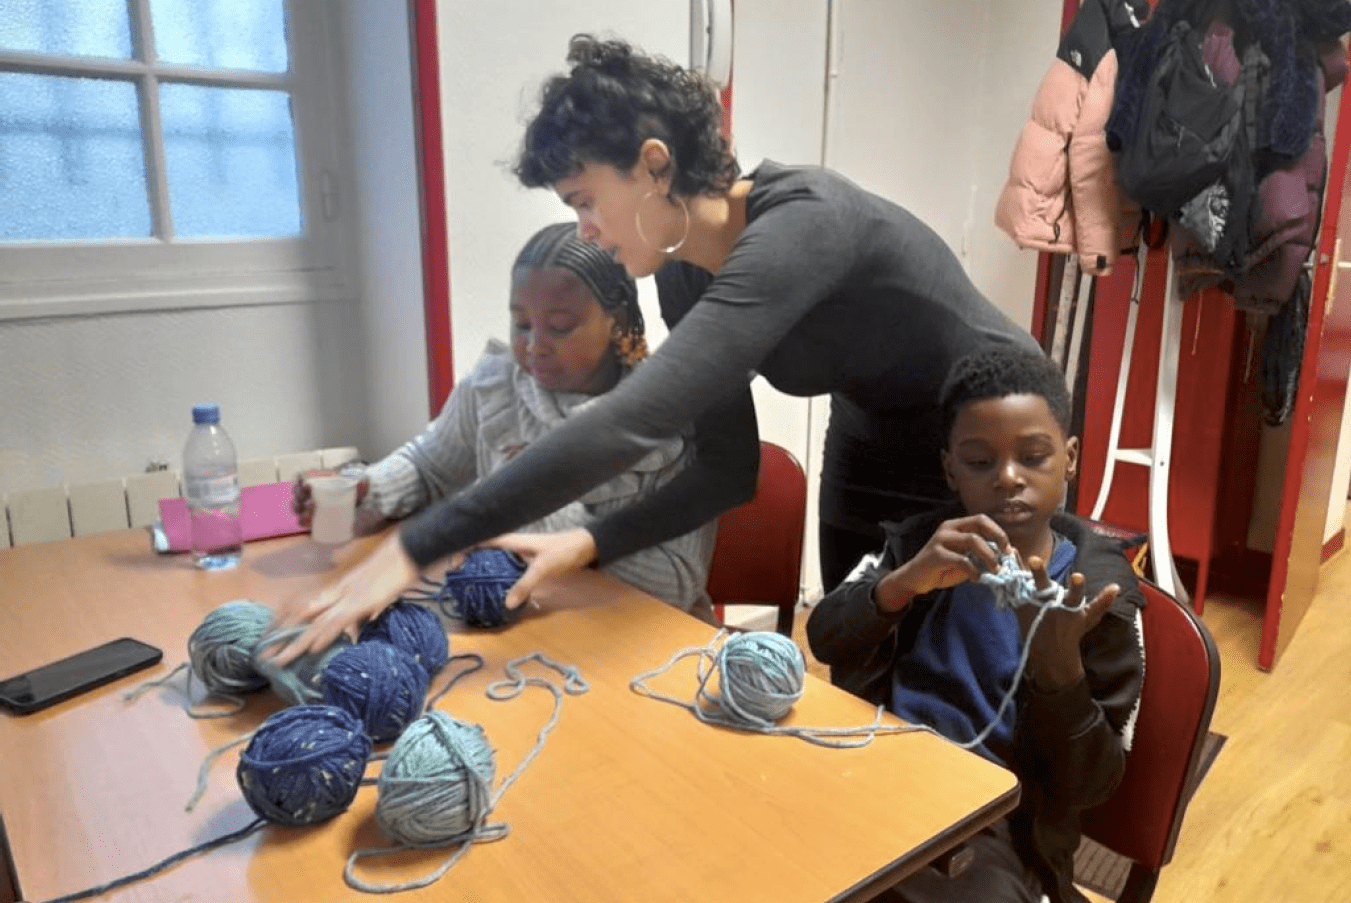 enfants et animateur pendant l'atelier de création artistique de fabrication de bracelets et autres objets à partir de produits recyclé, financée par la Réussite éducative, programme de l’état et de la ville de Paris